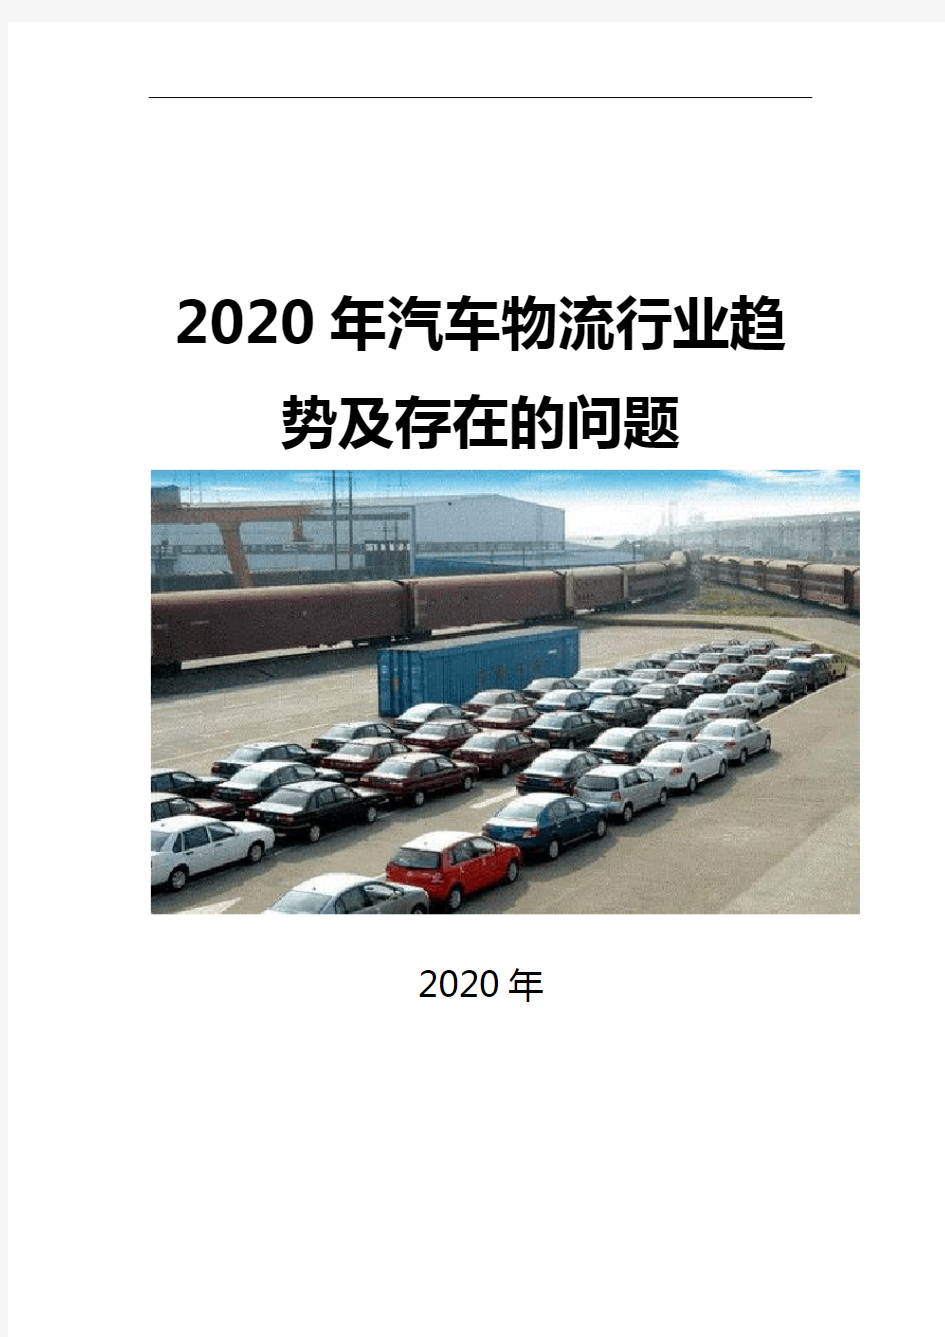 2020汽车物流行业趋势及存在的问题